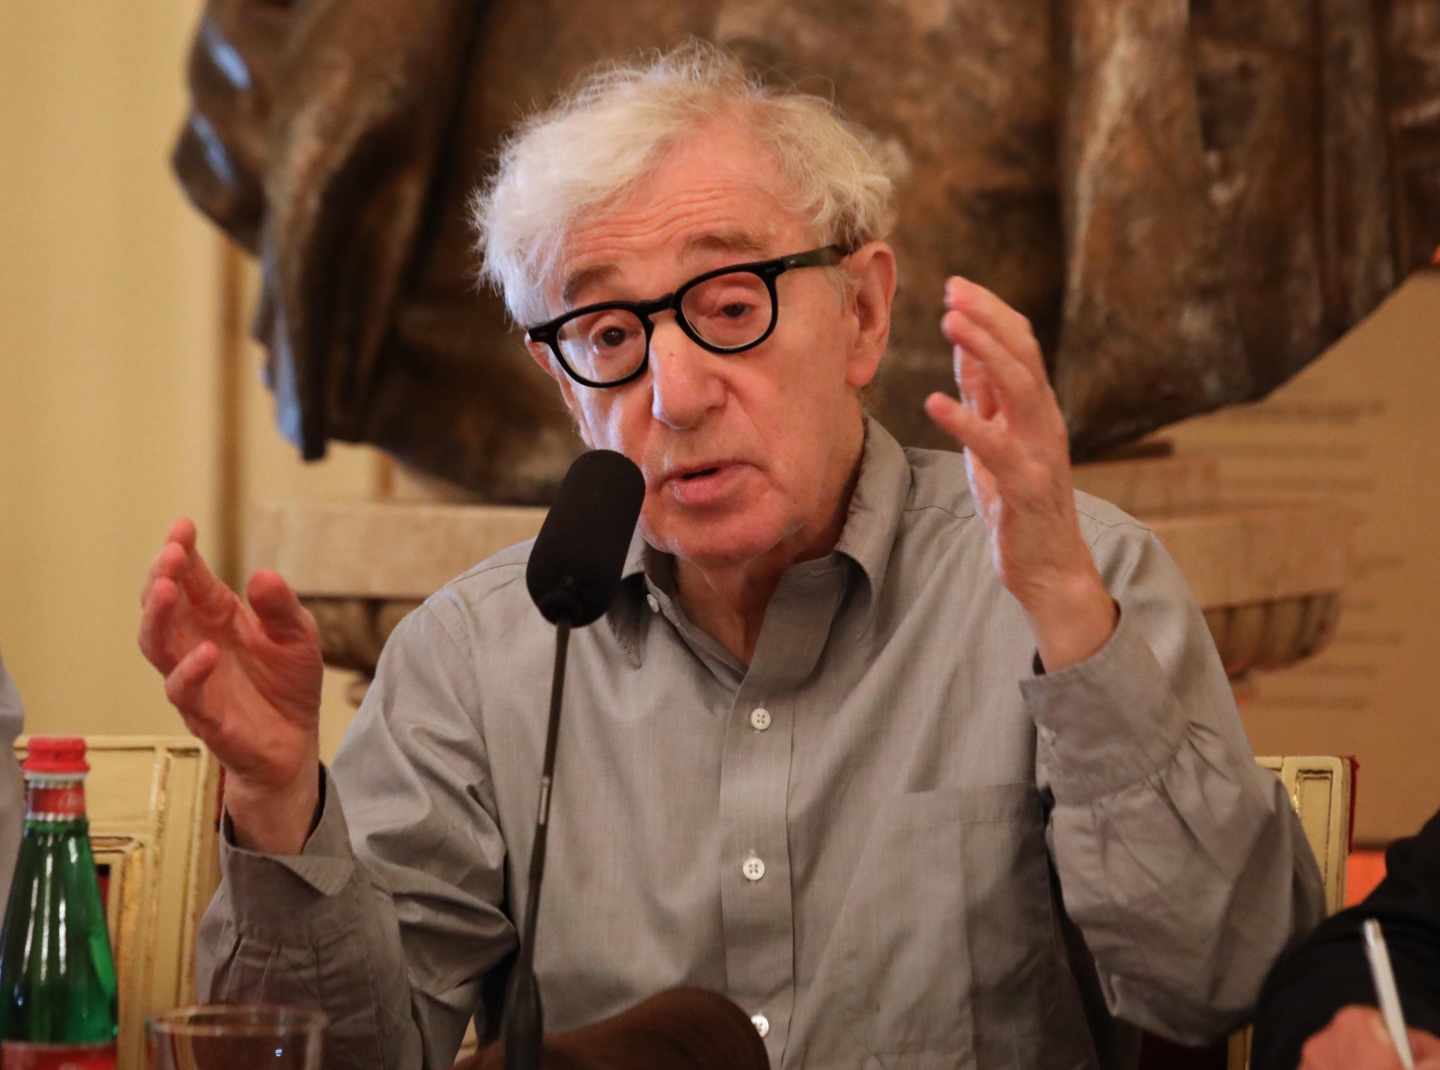 El director estadounidense Woody Allen.